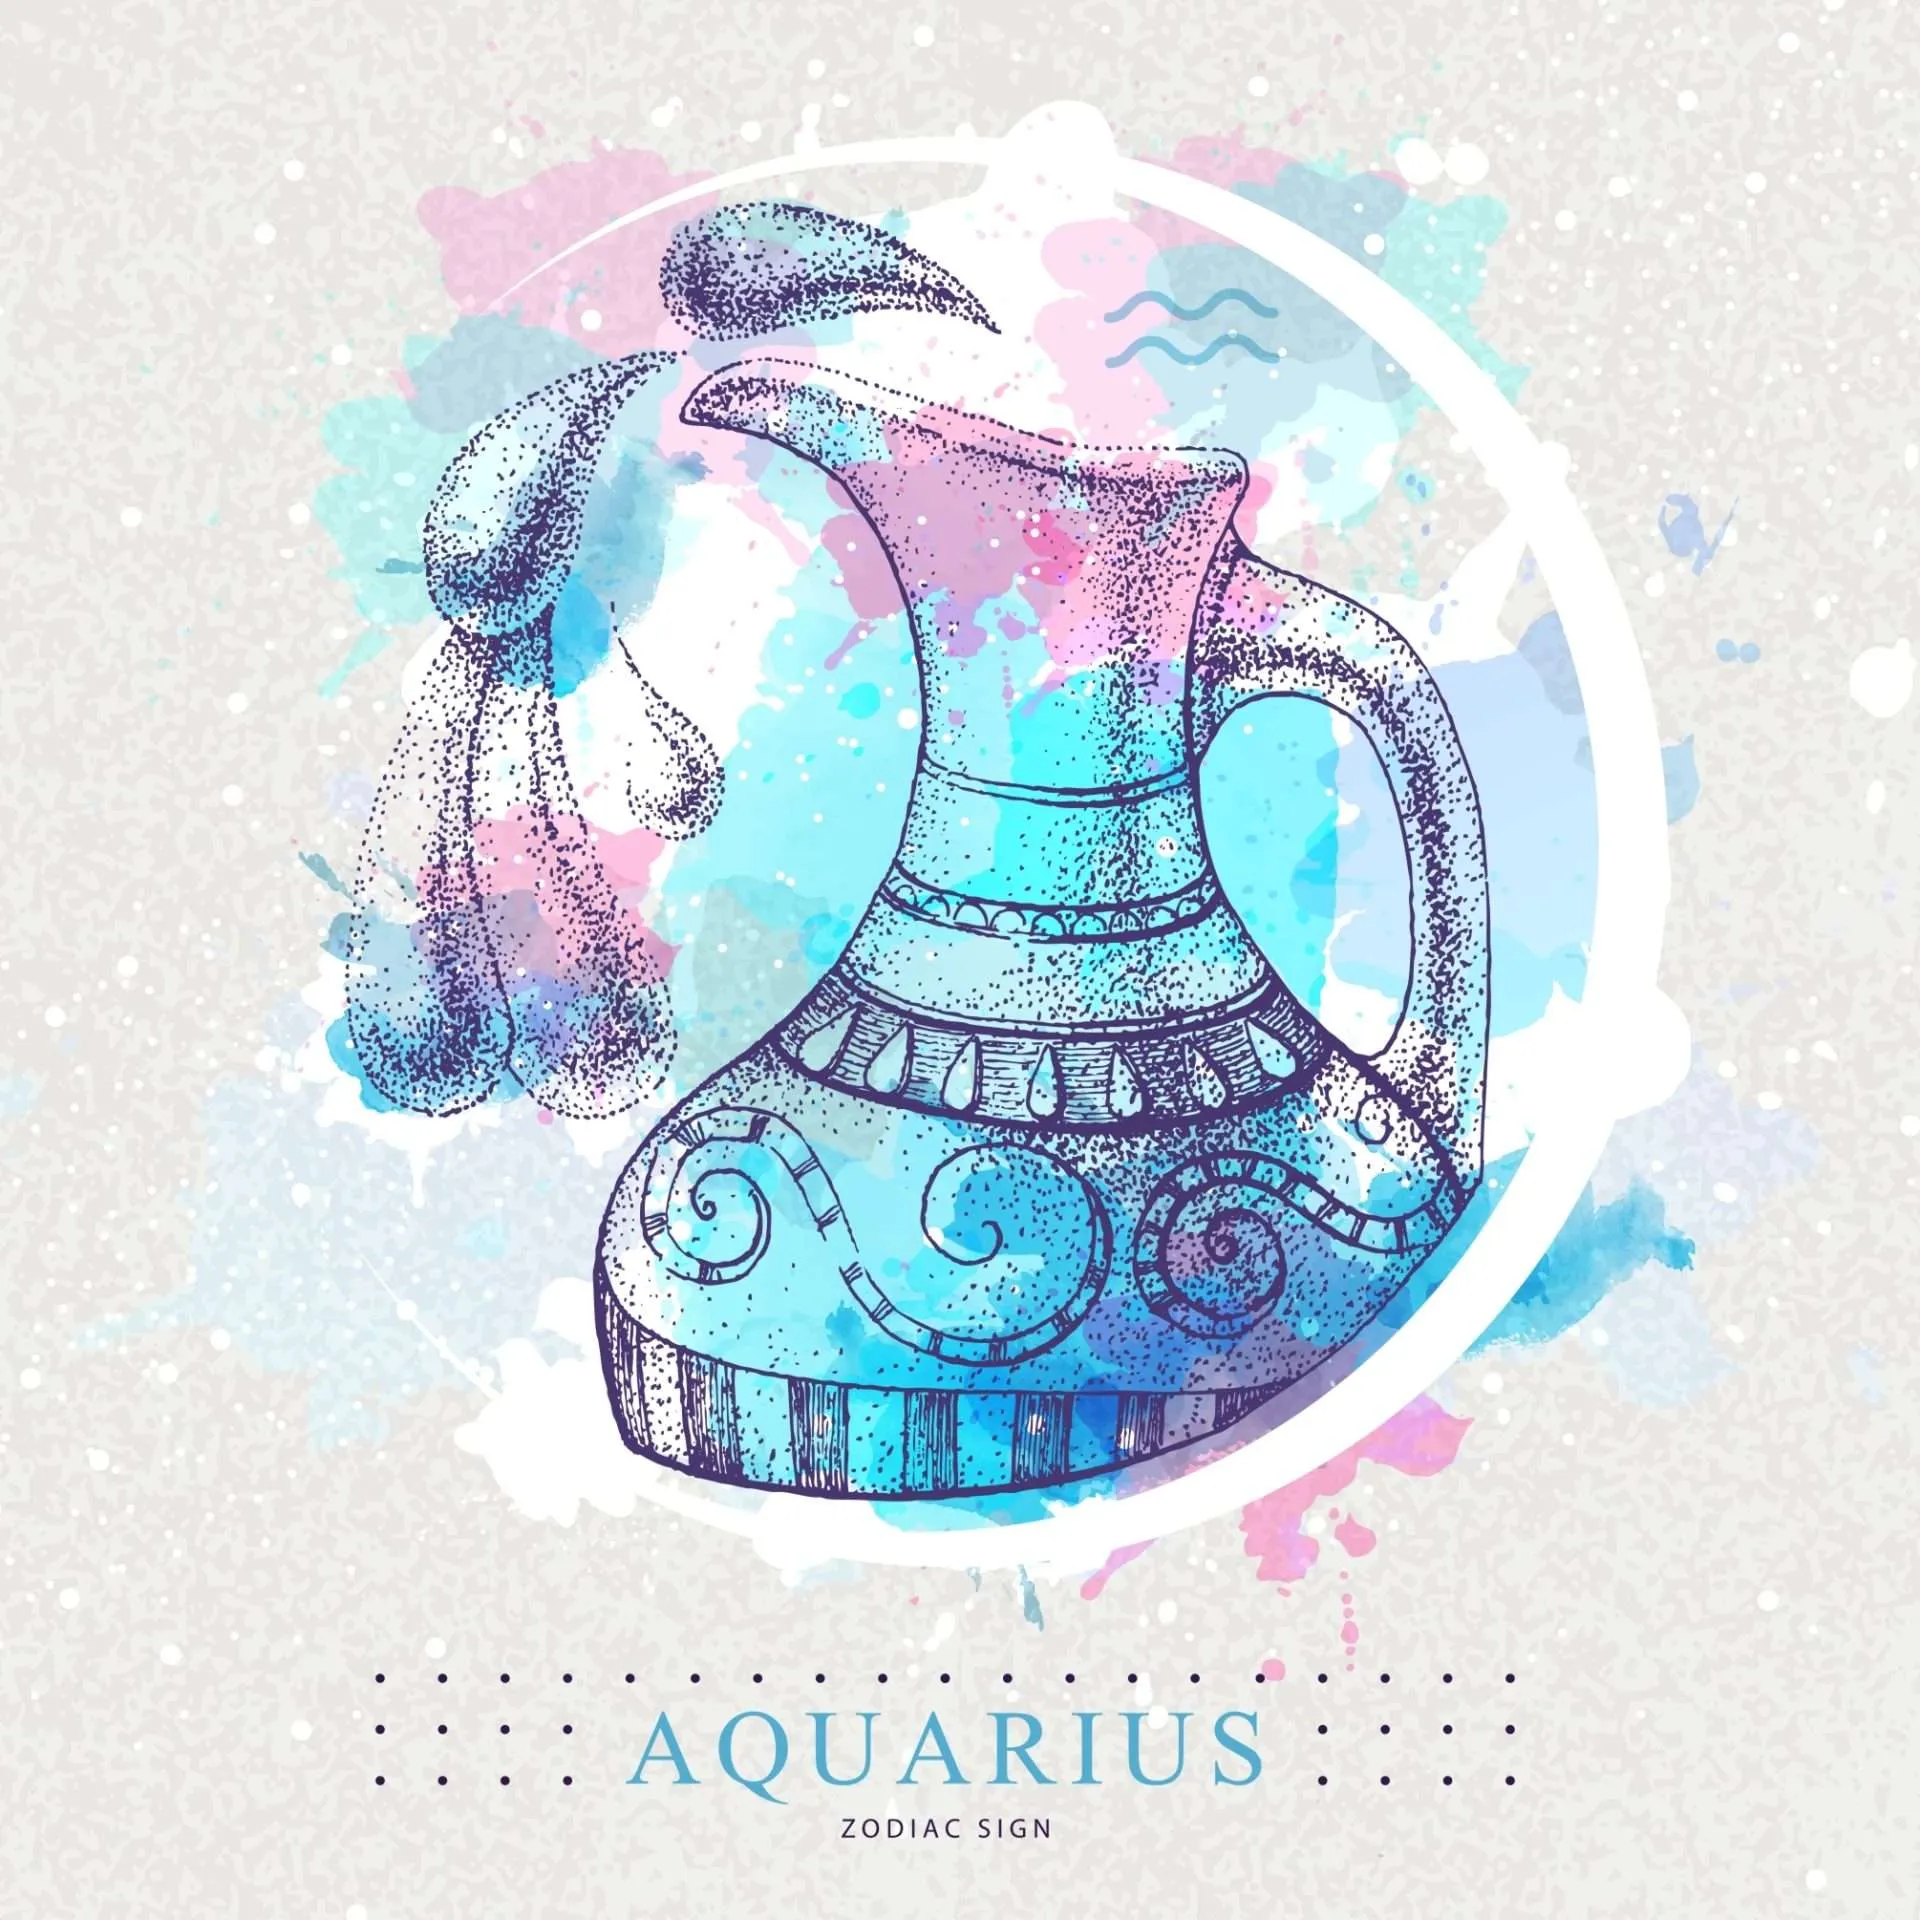 Aquarius Signature Sign